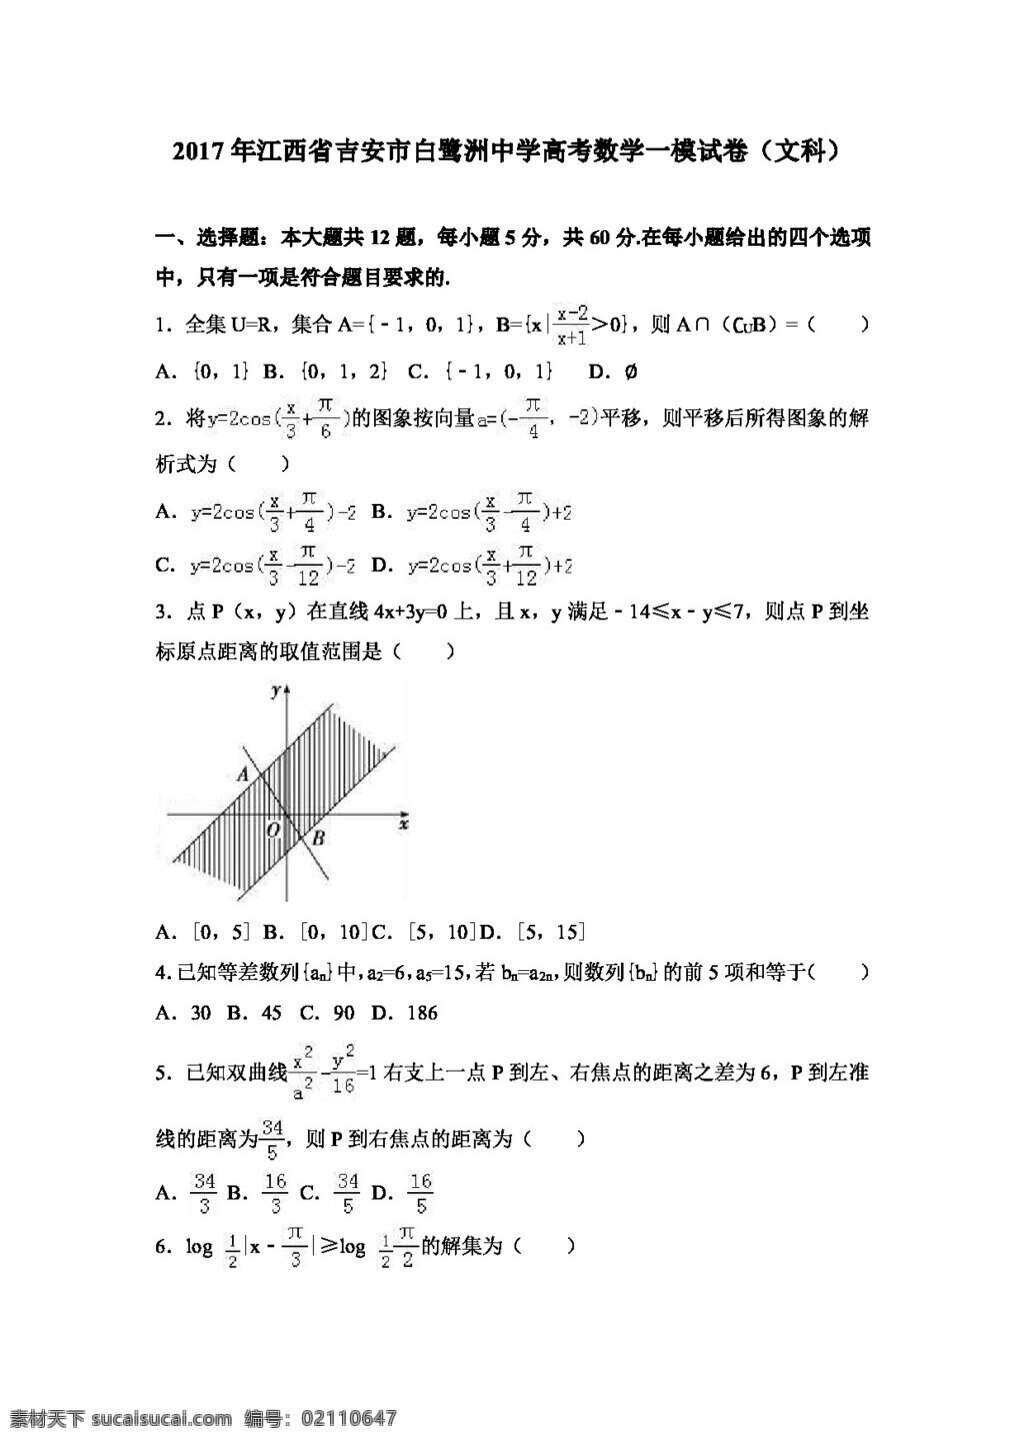 数学 人教 版 2017 年 江西省 吉安市 高考 模 试卷 文科 高考专区 人教版